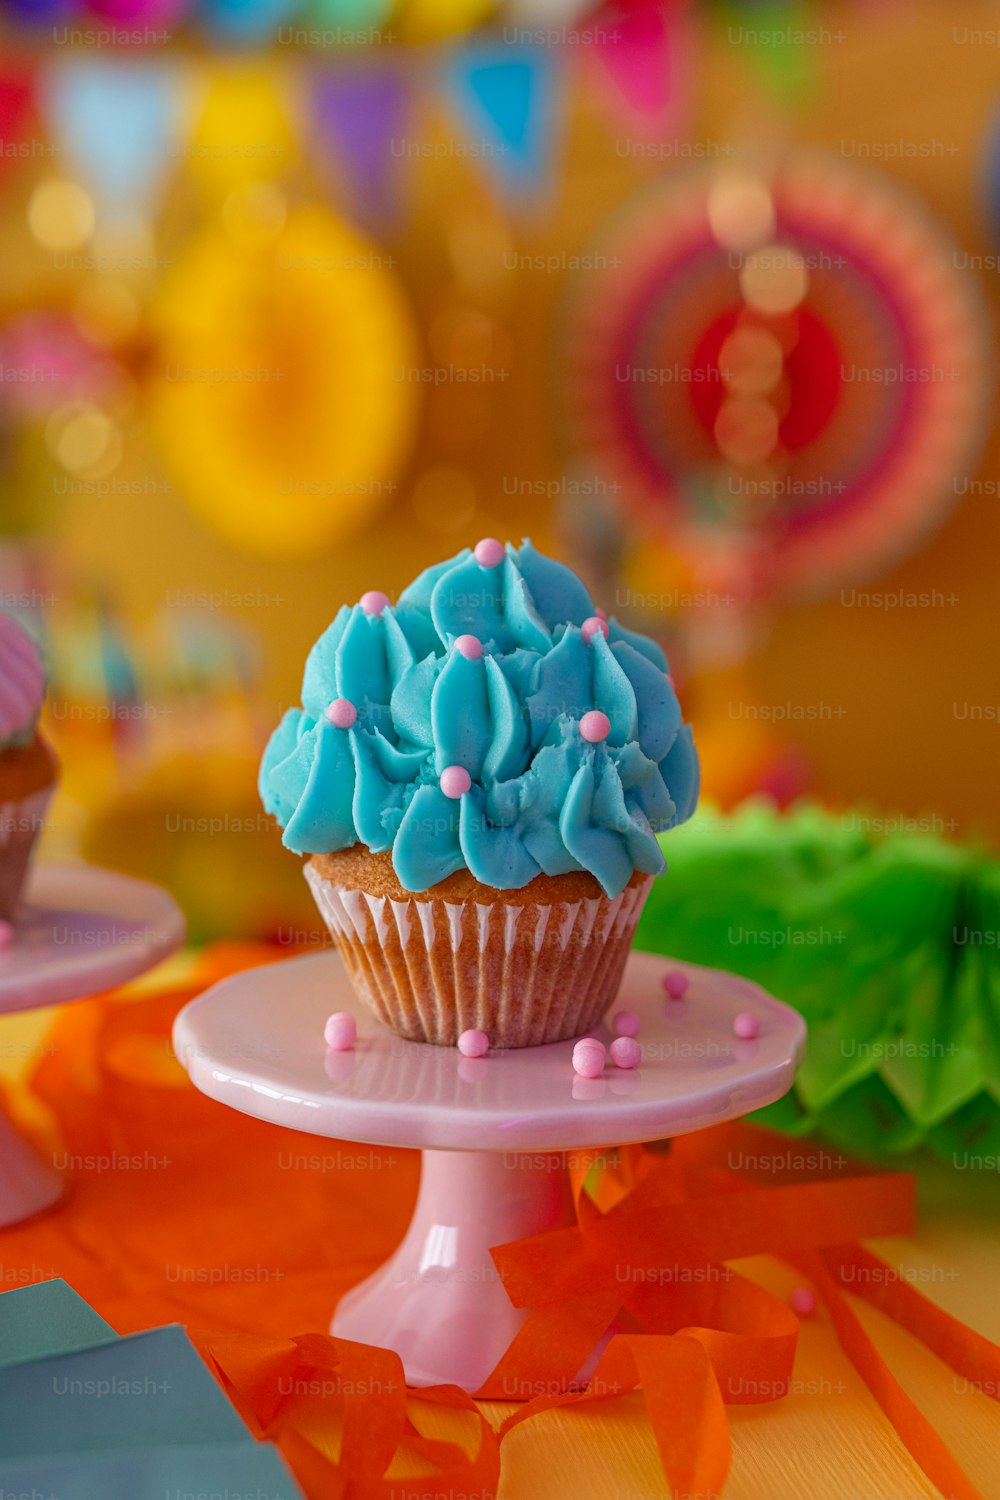 un cupcake con glaseado azul y espolvorea en un plato